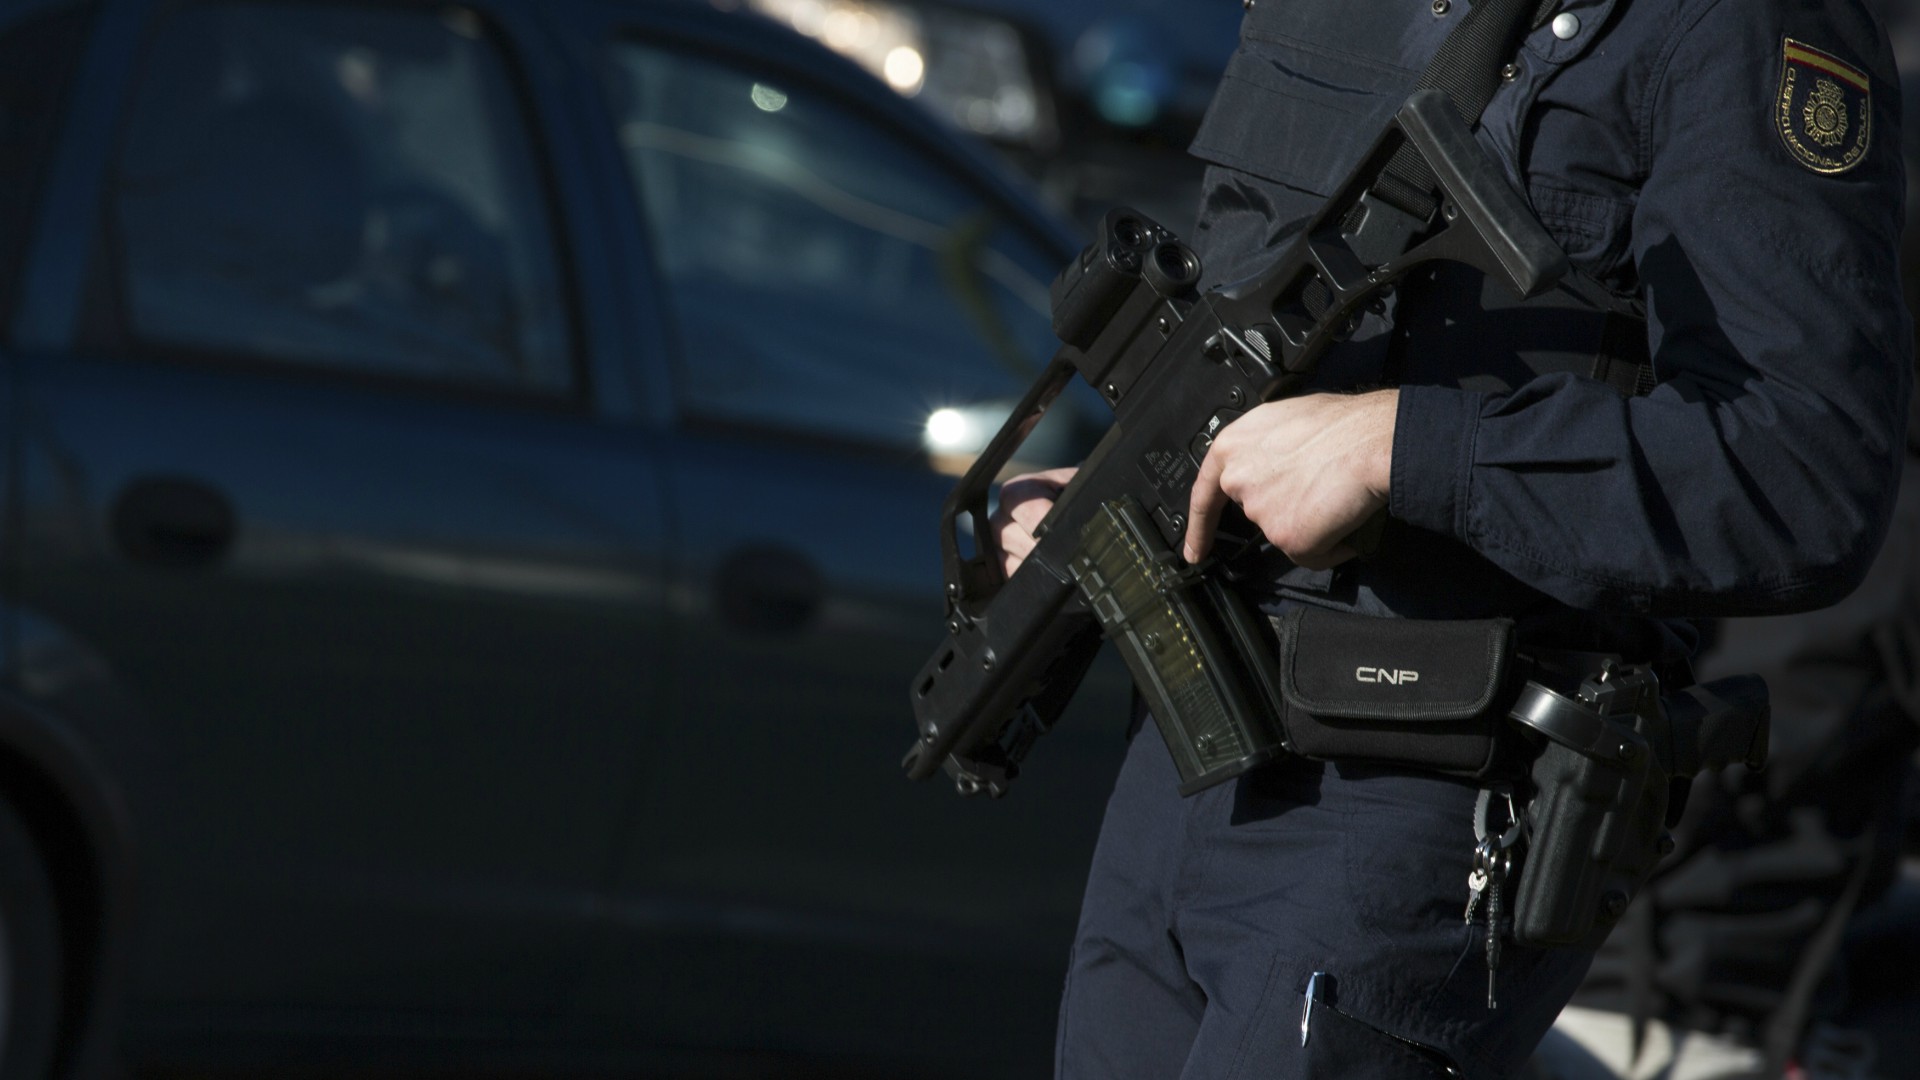 La Policía Municipal de Alcorcón incauta varias armas 'airsoft